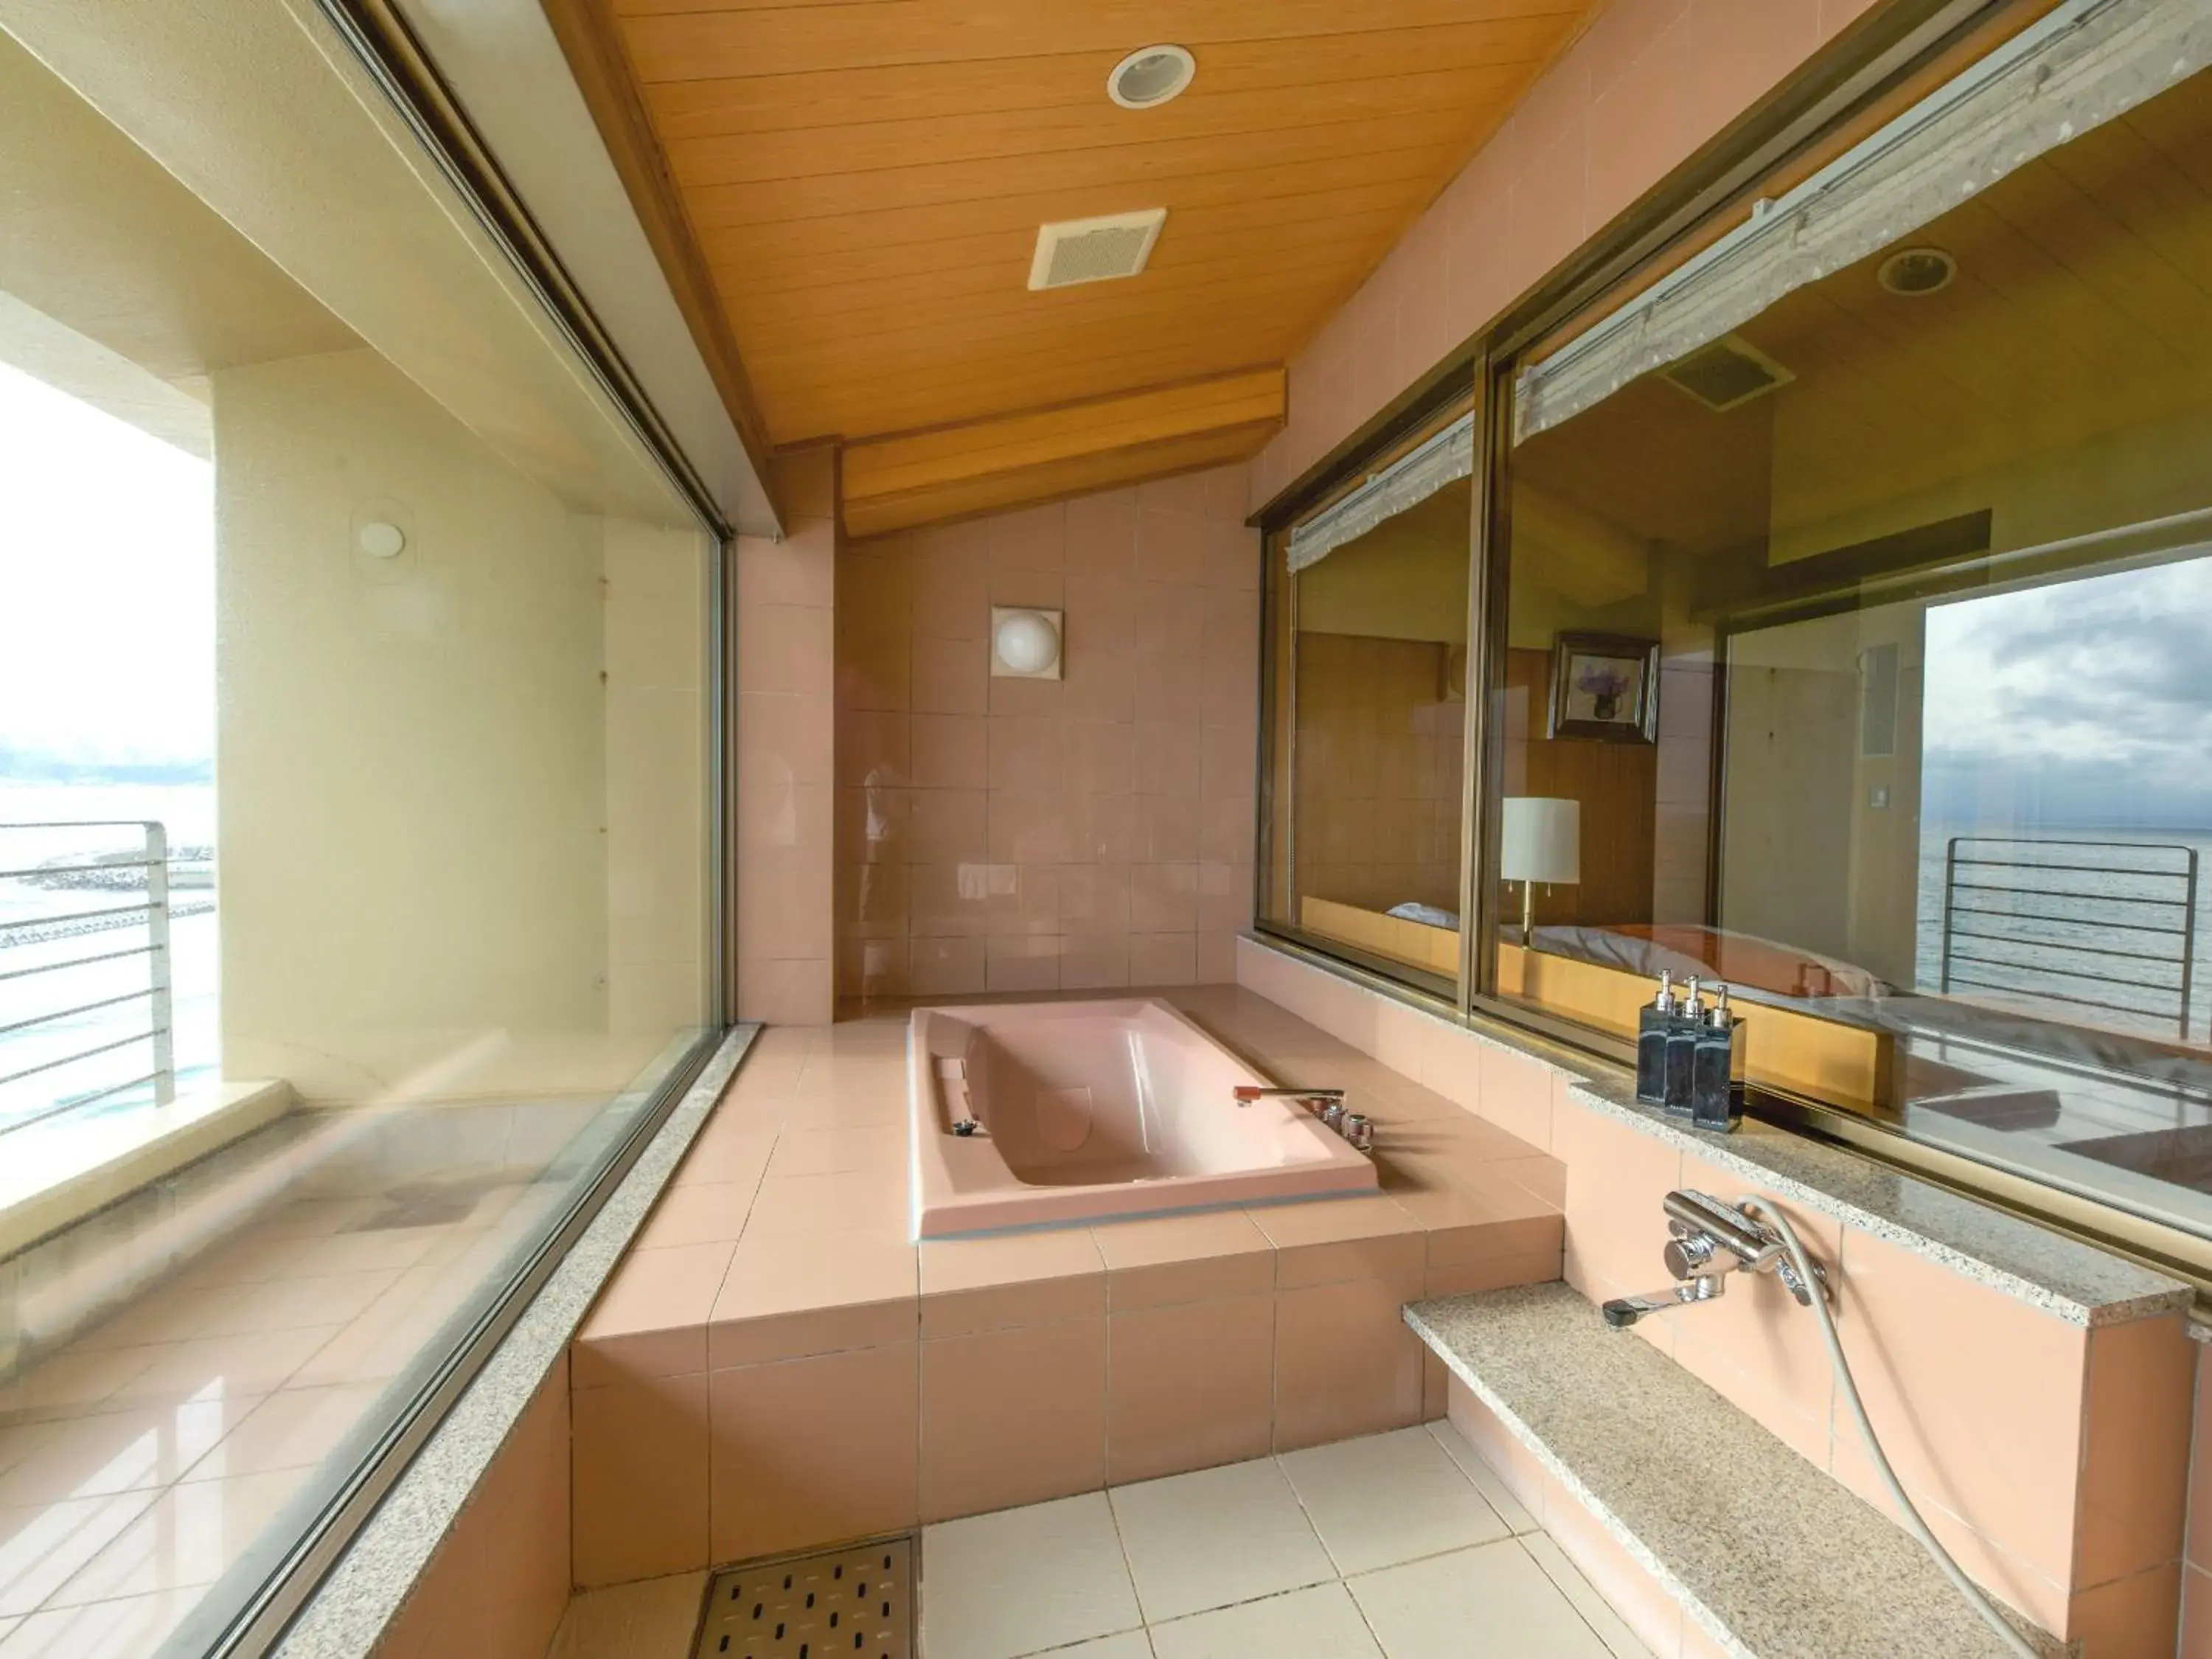 Hot Spring Bath, Kitchen/Kitchenette in Wakamatsu Hot Spring Resort